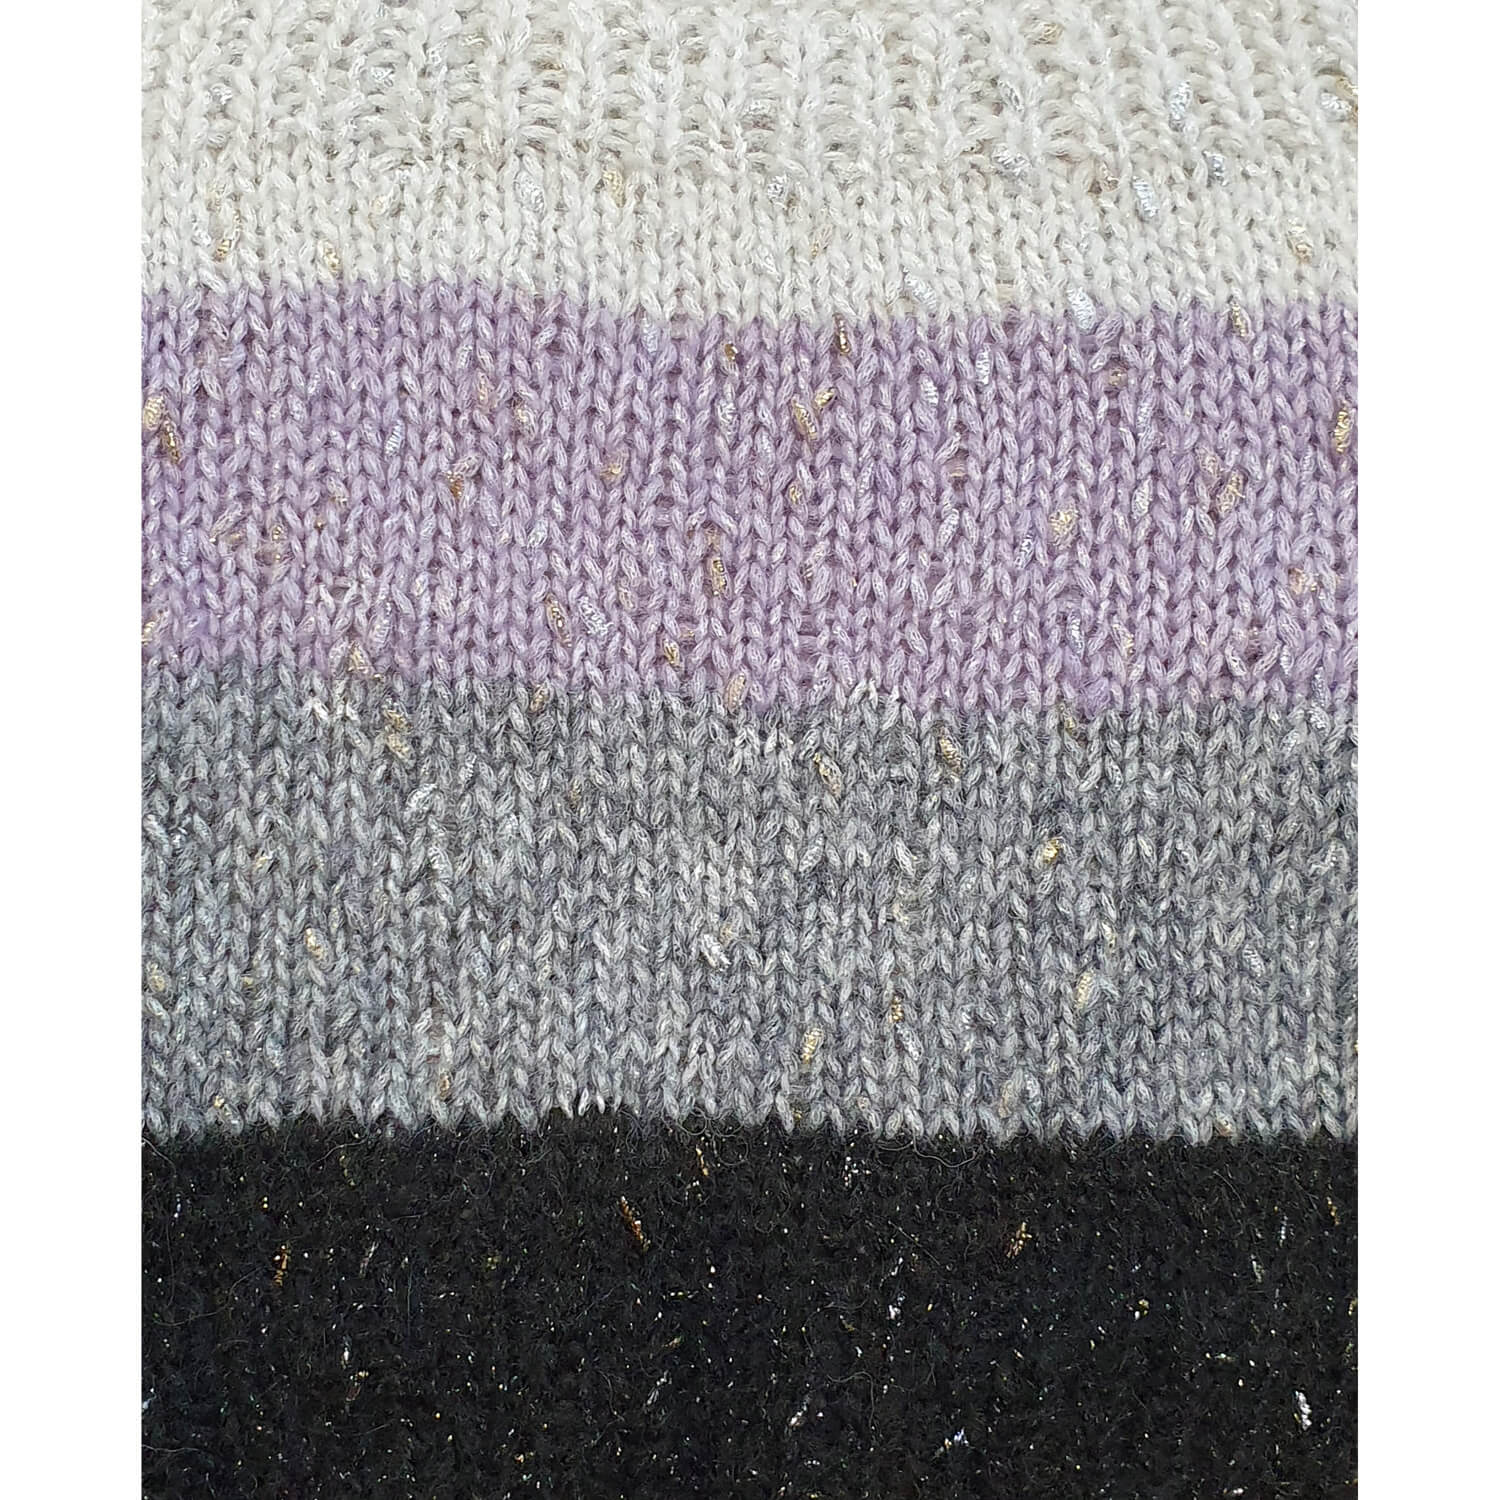 Пряжа из альпаки, шерсти и люрекса Mirage, цвет Фиолетовый, фото 3